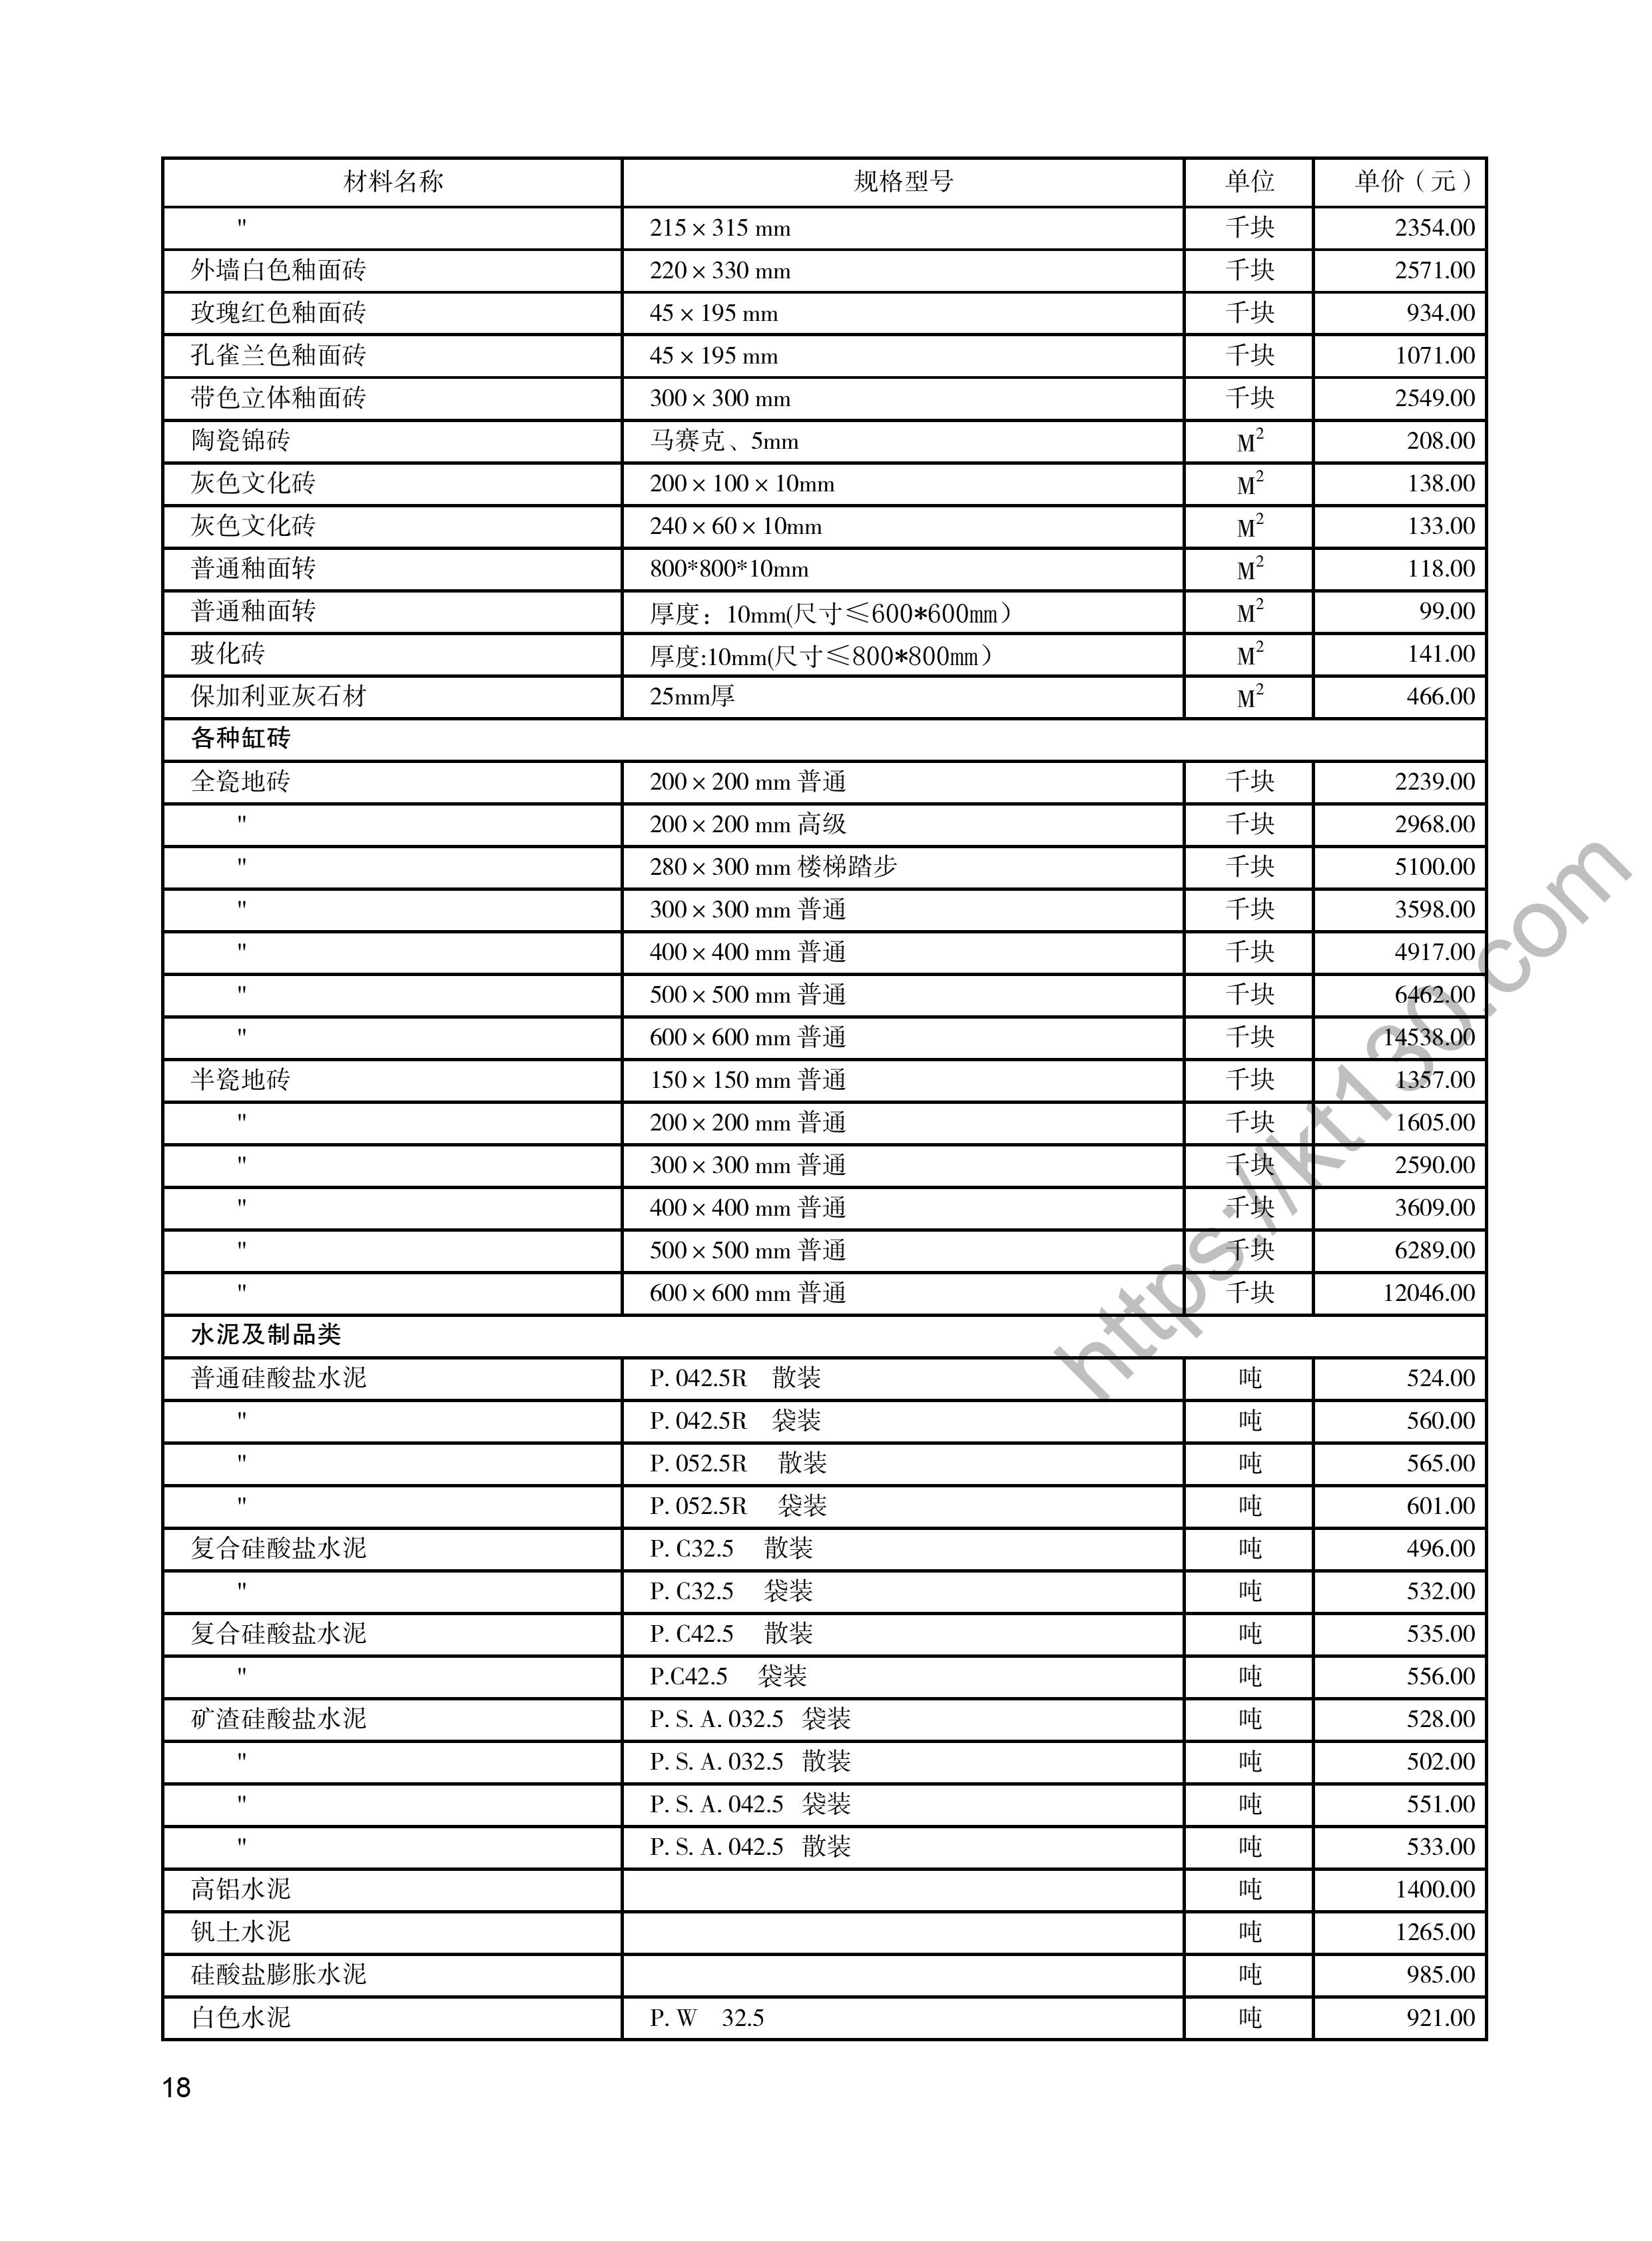 陕西省2022年4月建筑材料价_装饰面板、瓷砖_48138